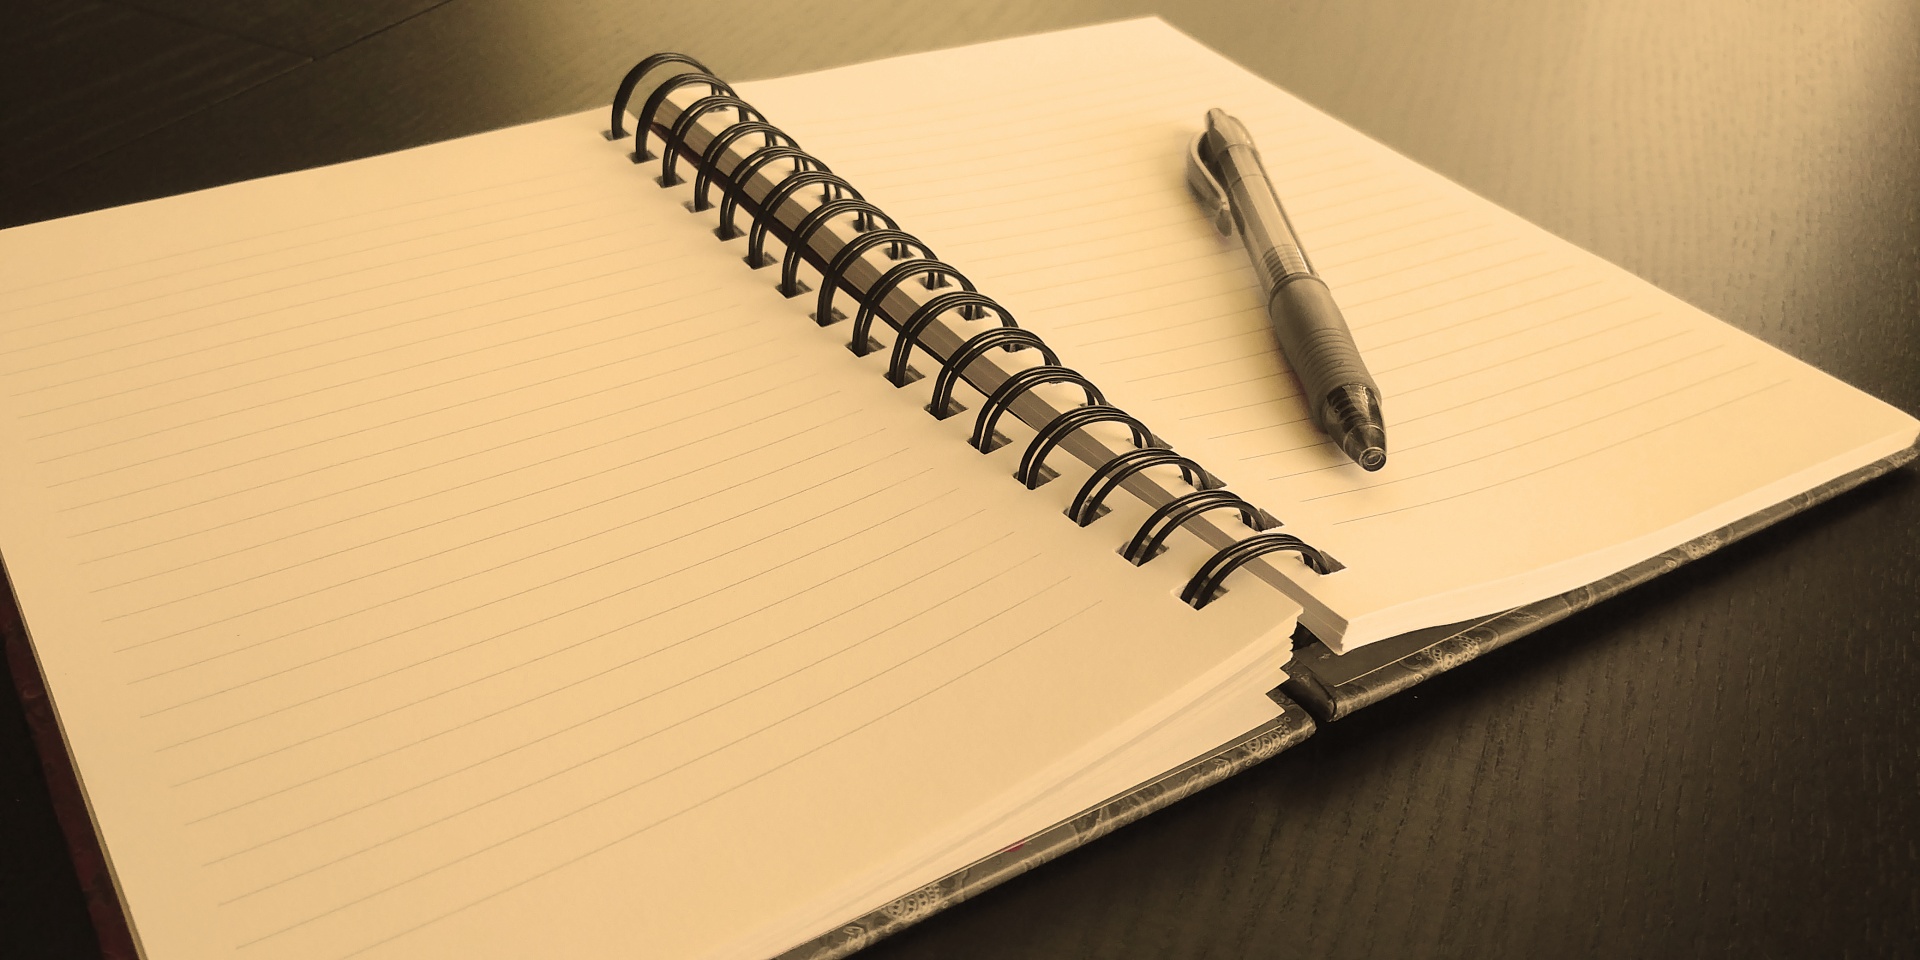 Open Blank Notebook In Sepia